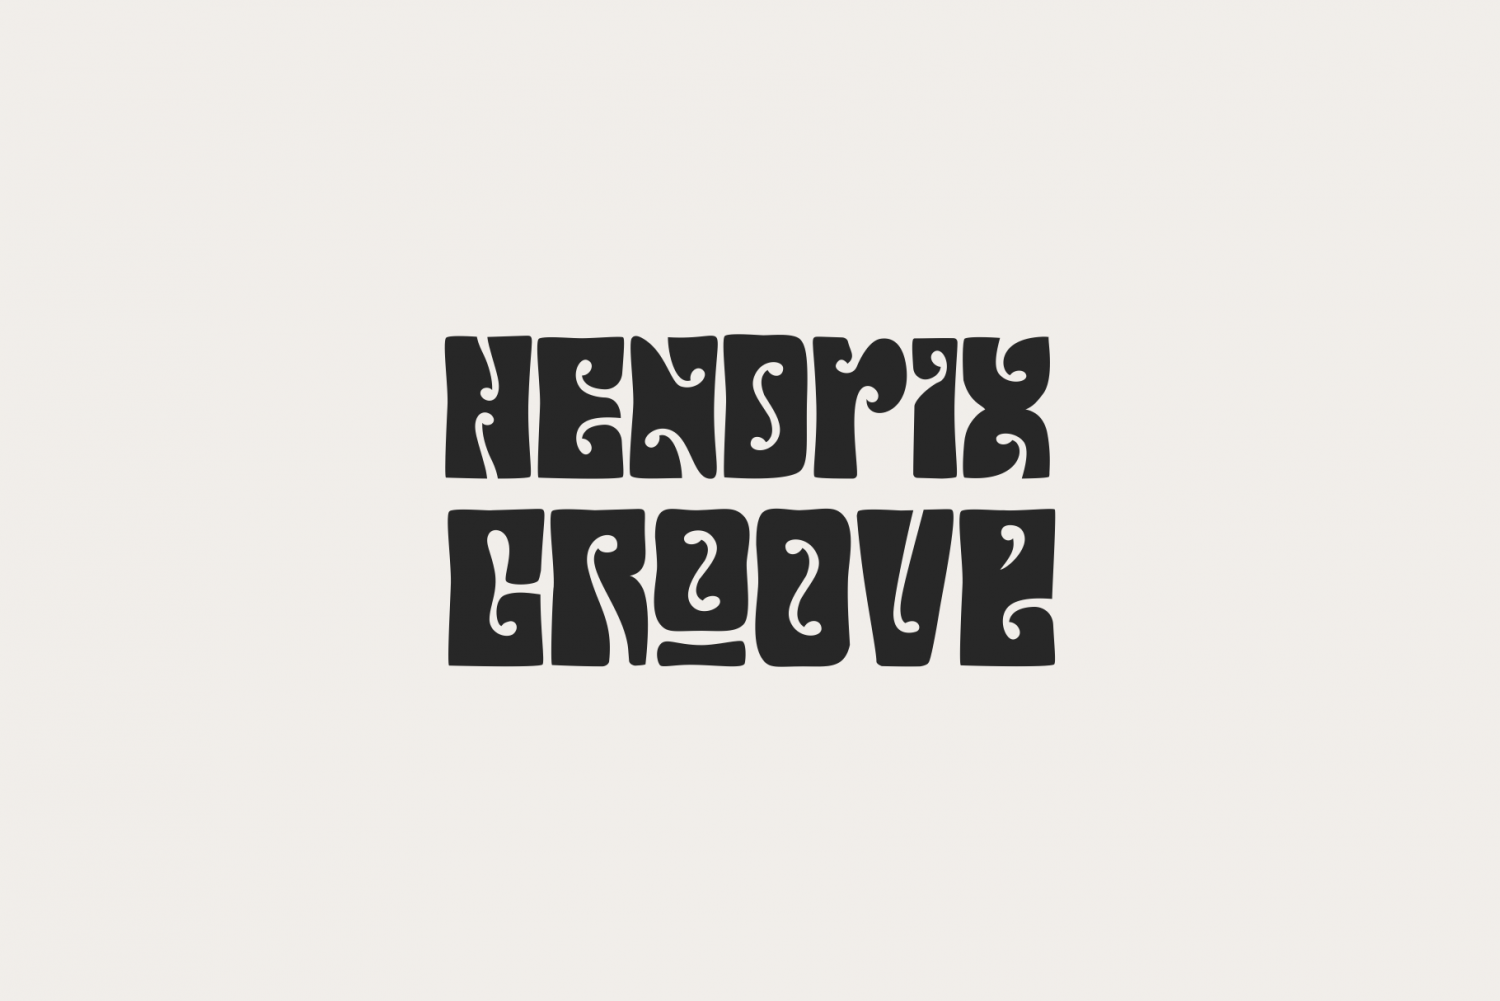 Hendrix Groove Free Font